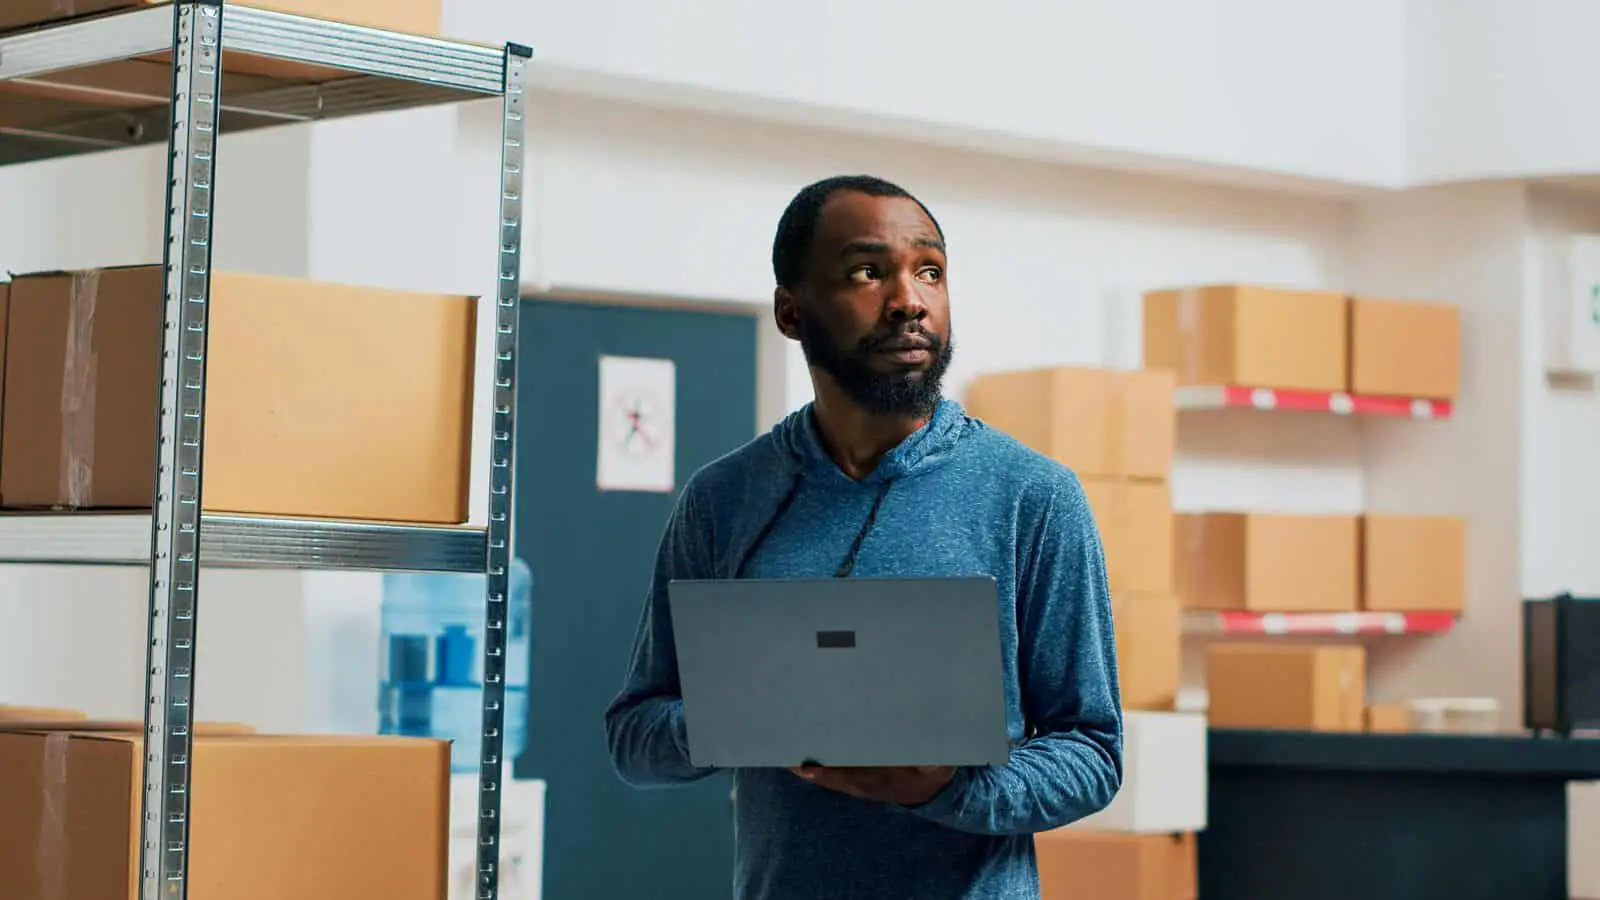 Un hombre en un almacén sosteniendo una computadora portátil.